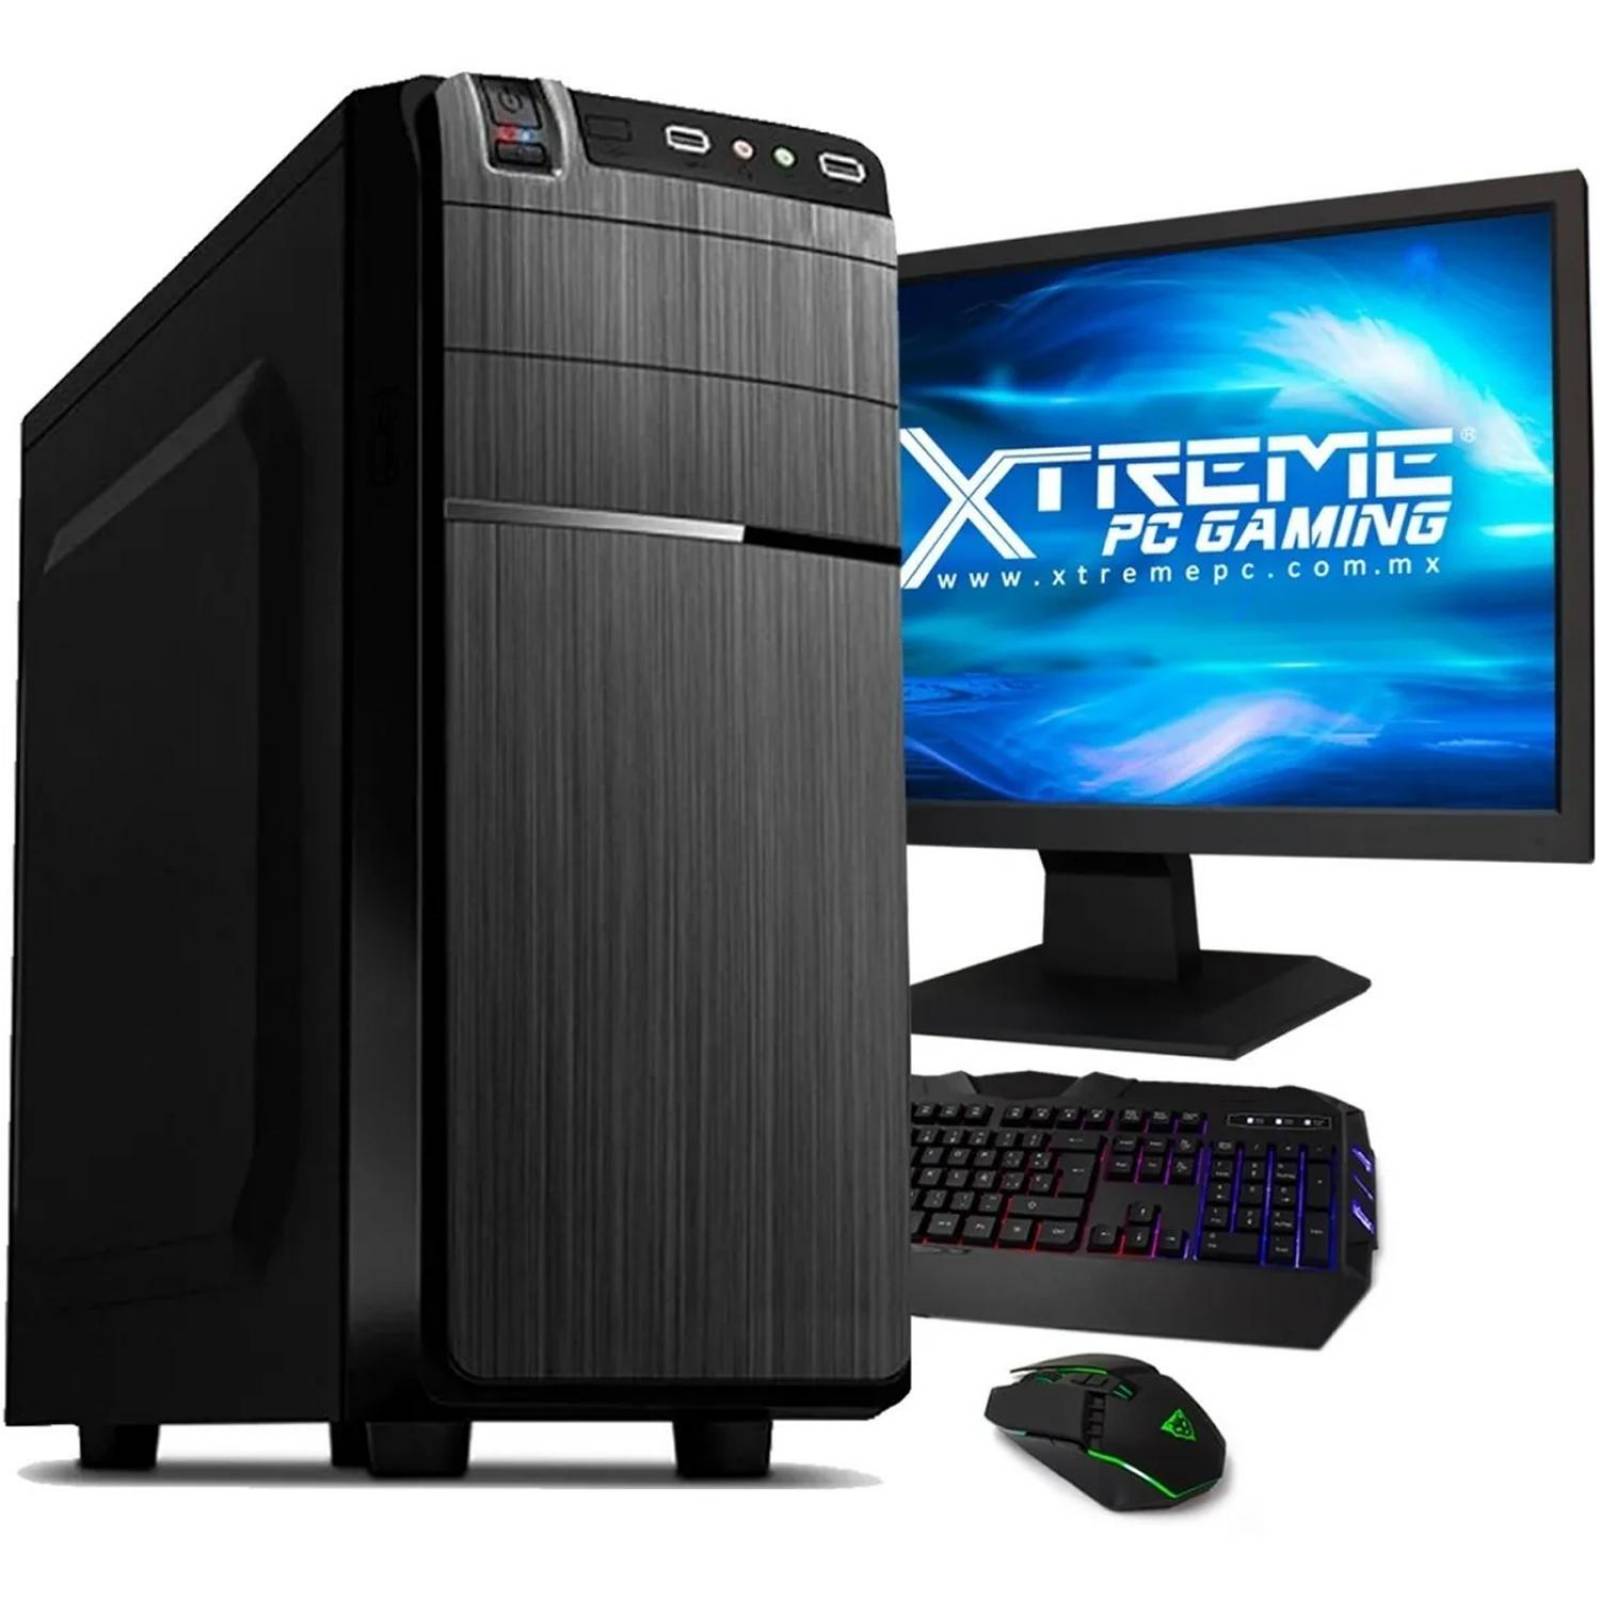 Xtreme Pc Gamer AMD Radeon R7 A8 9600 8GB 500GB Monitor 19.5 WIFI 